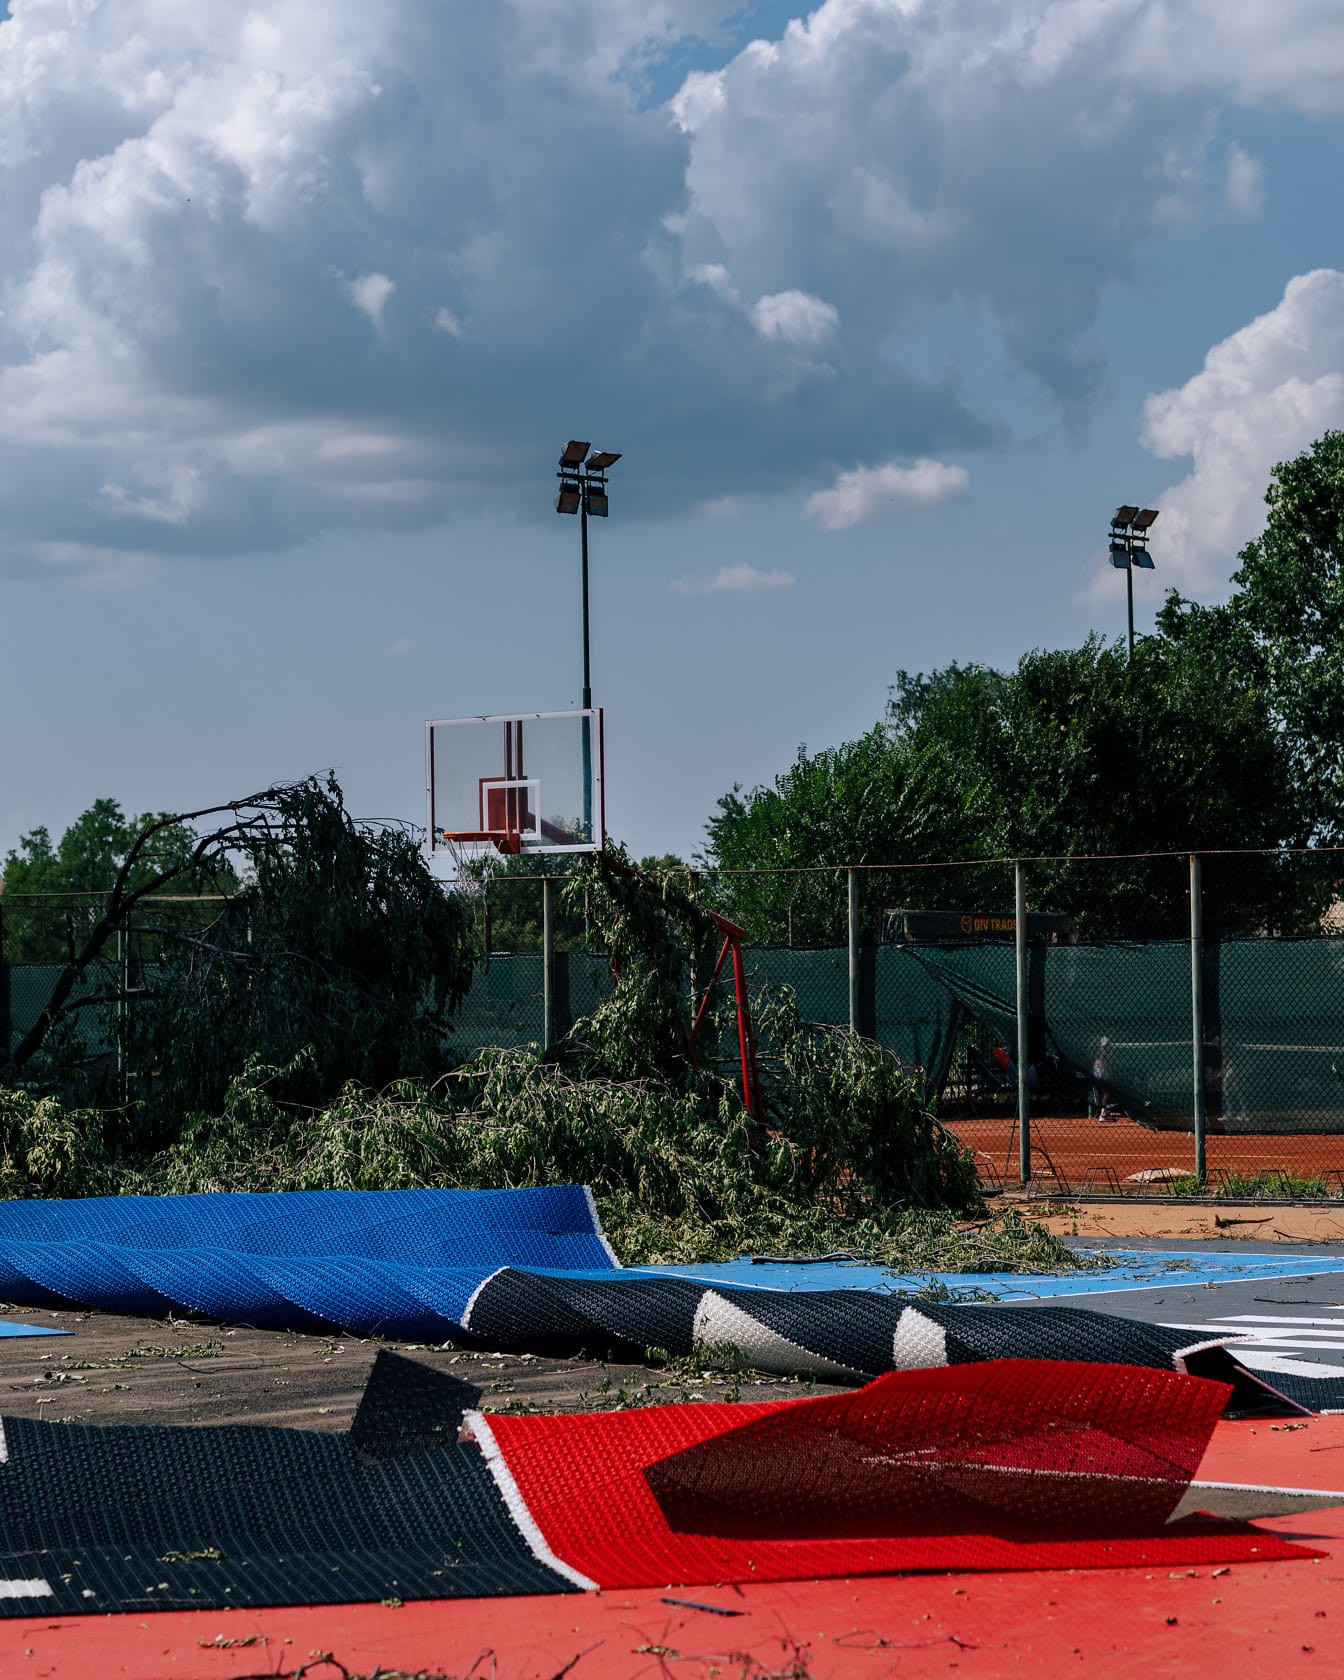 Vietor hurikánom poškodil stromy a basketbalové ihrisko